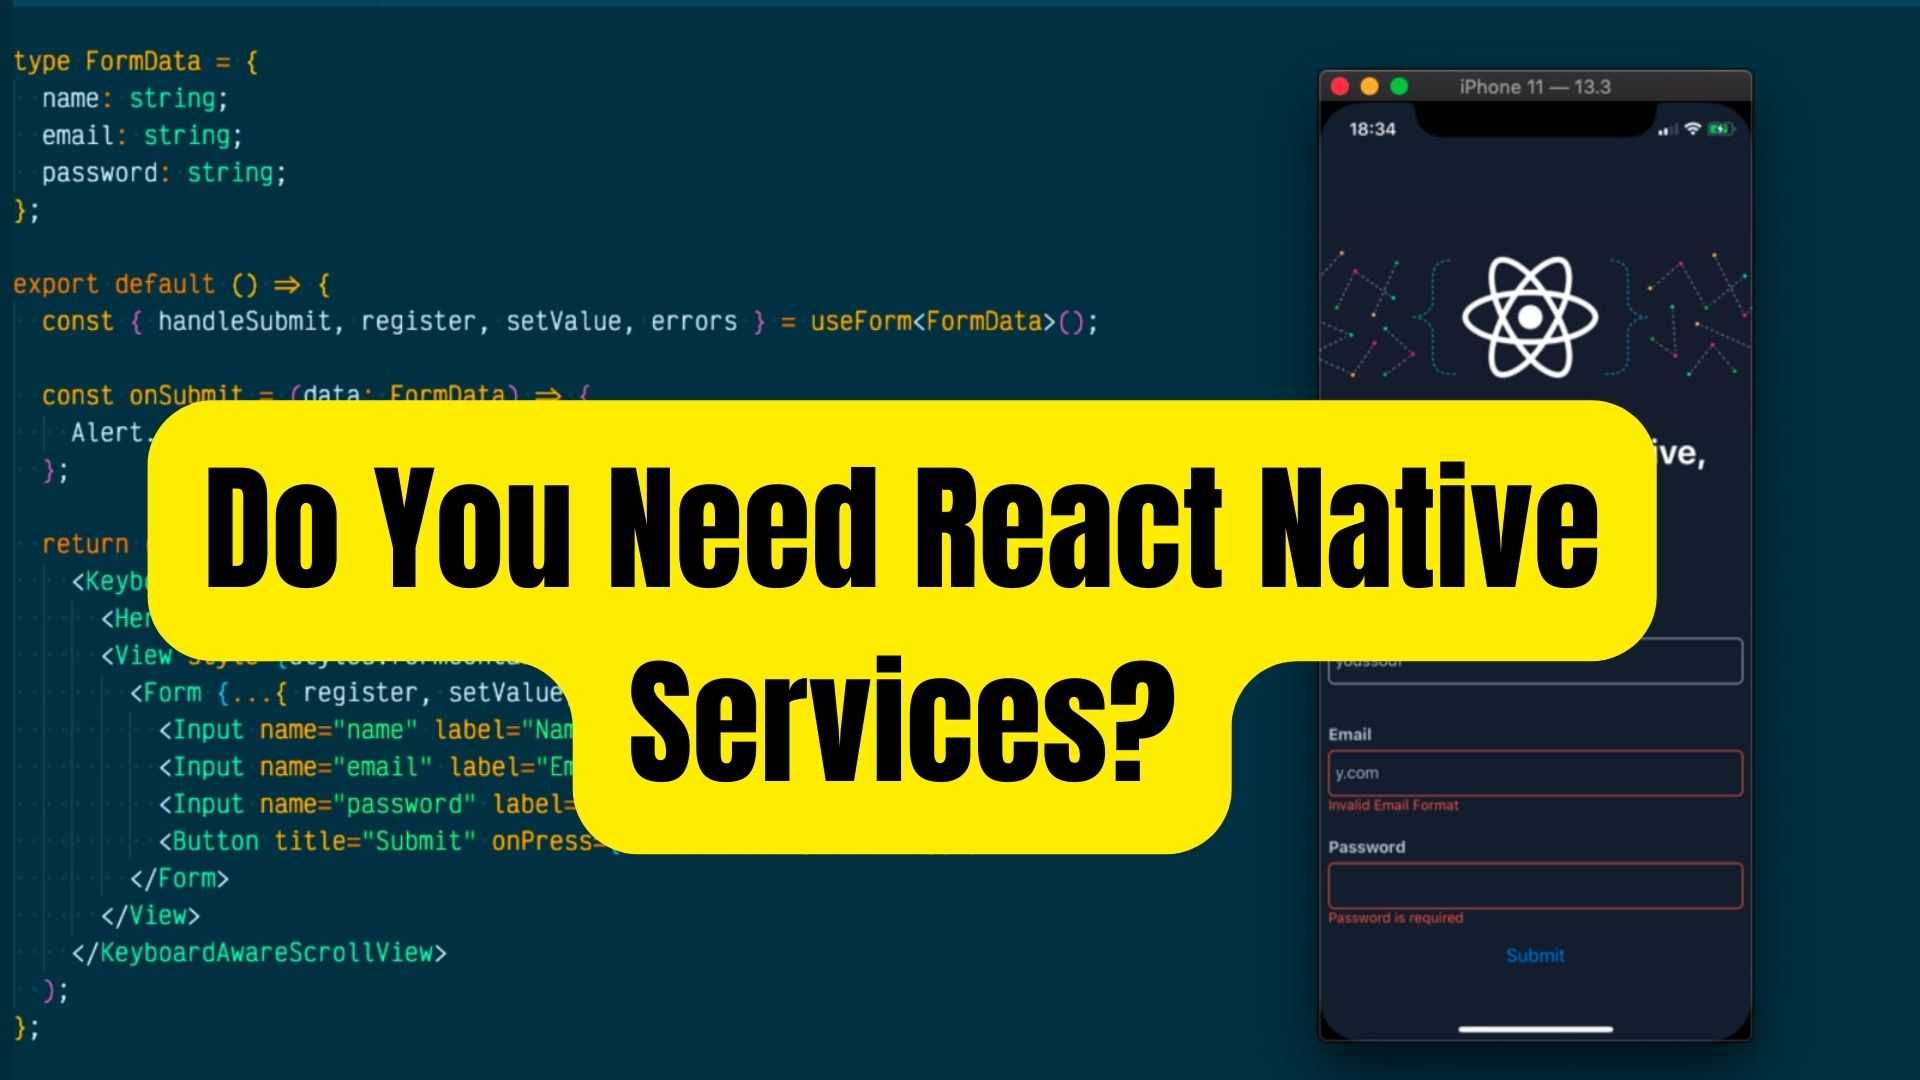 Do You Need React Native Services?